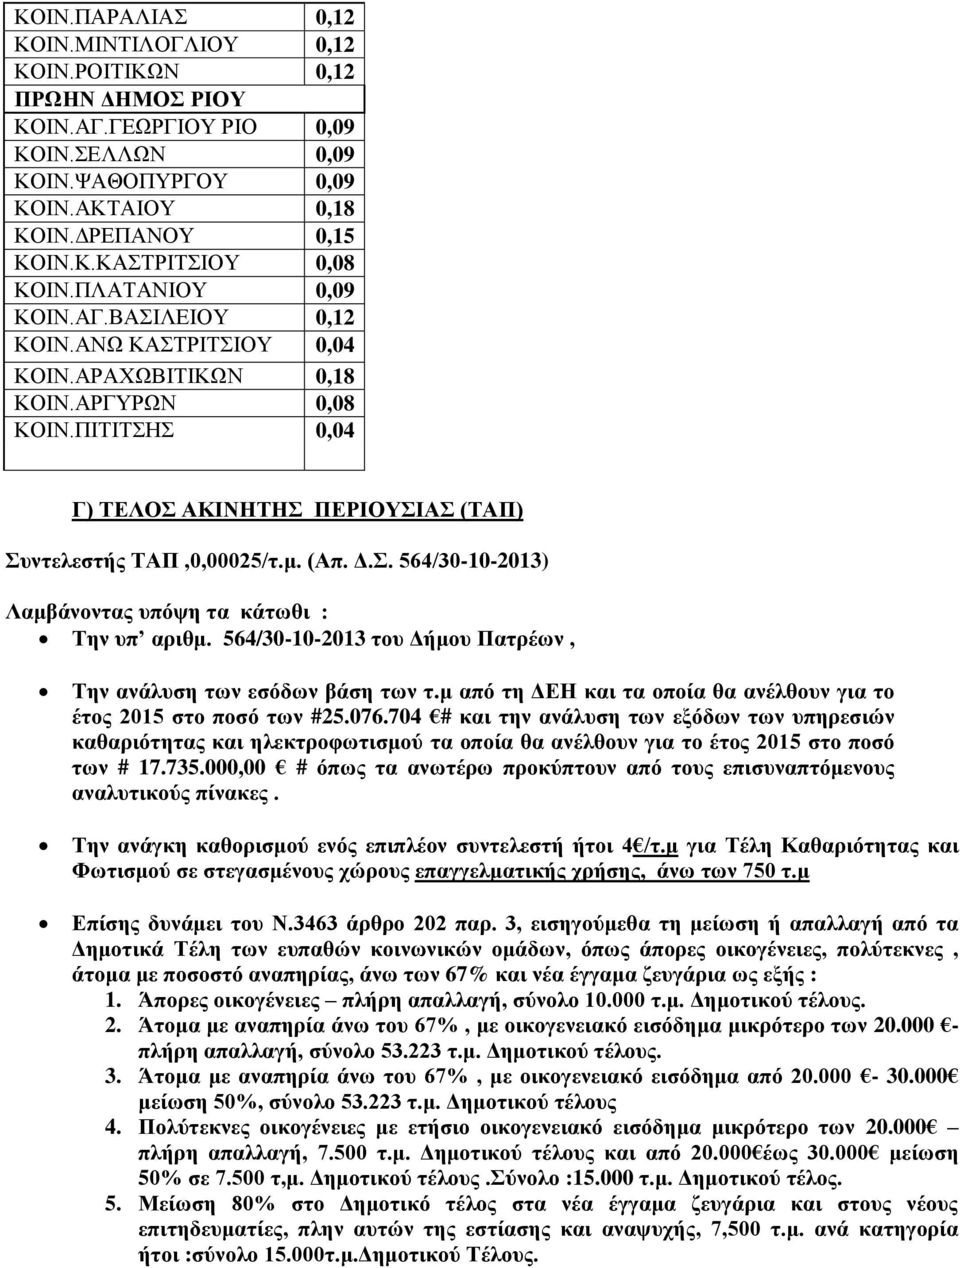 564/30-10-2013 του Δήμου Πατρέων, Την ανάλυση των εσόδων βάση των τ.μ από τη ΔΕΗ και τα οποία θα ανέλθουν για το έτος 2015 στο ποσό των #25.076.